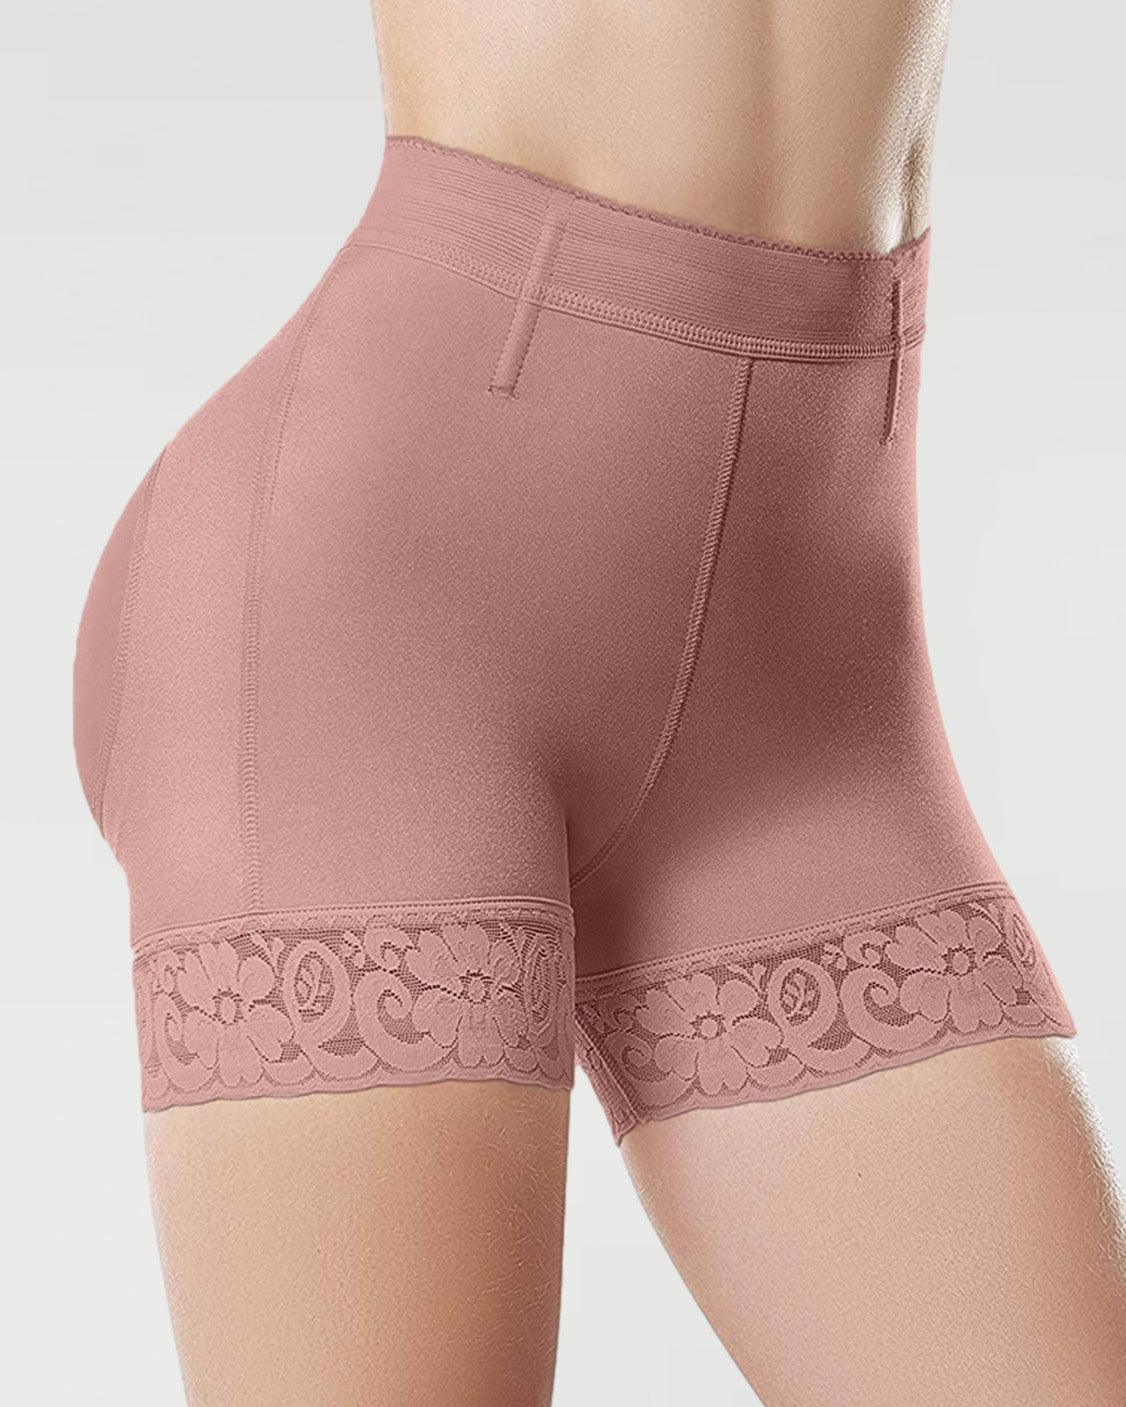 High Waist Butt Lifter Women Hip Enhancer Underwear Shapewear - Wishe